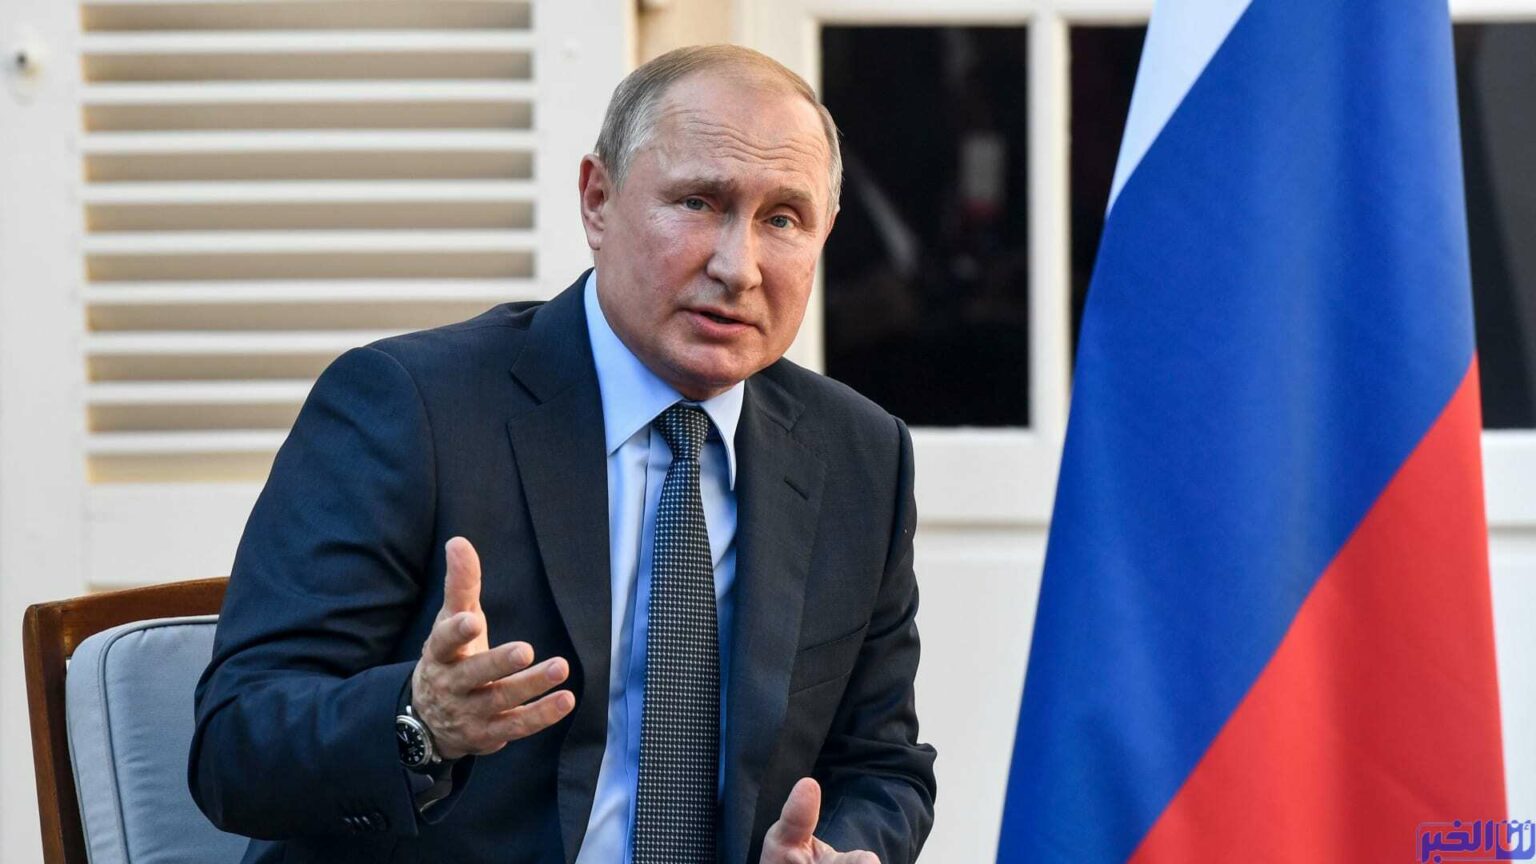 الرئيس الروسي يتخذ قرارا ضدَّ "الدول غير الصديقة" وإعلان "طارئ" من الرئاسة الأوكرانية